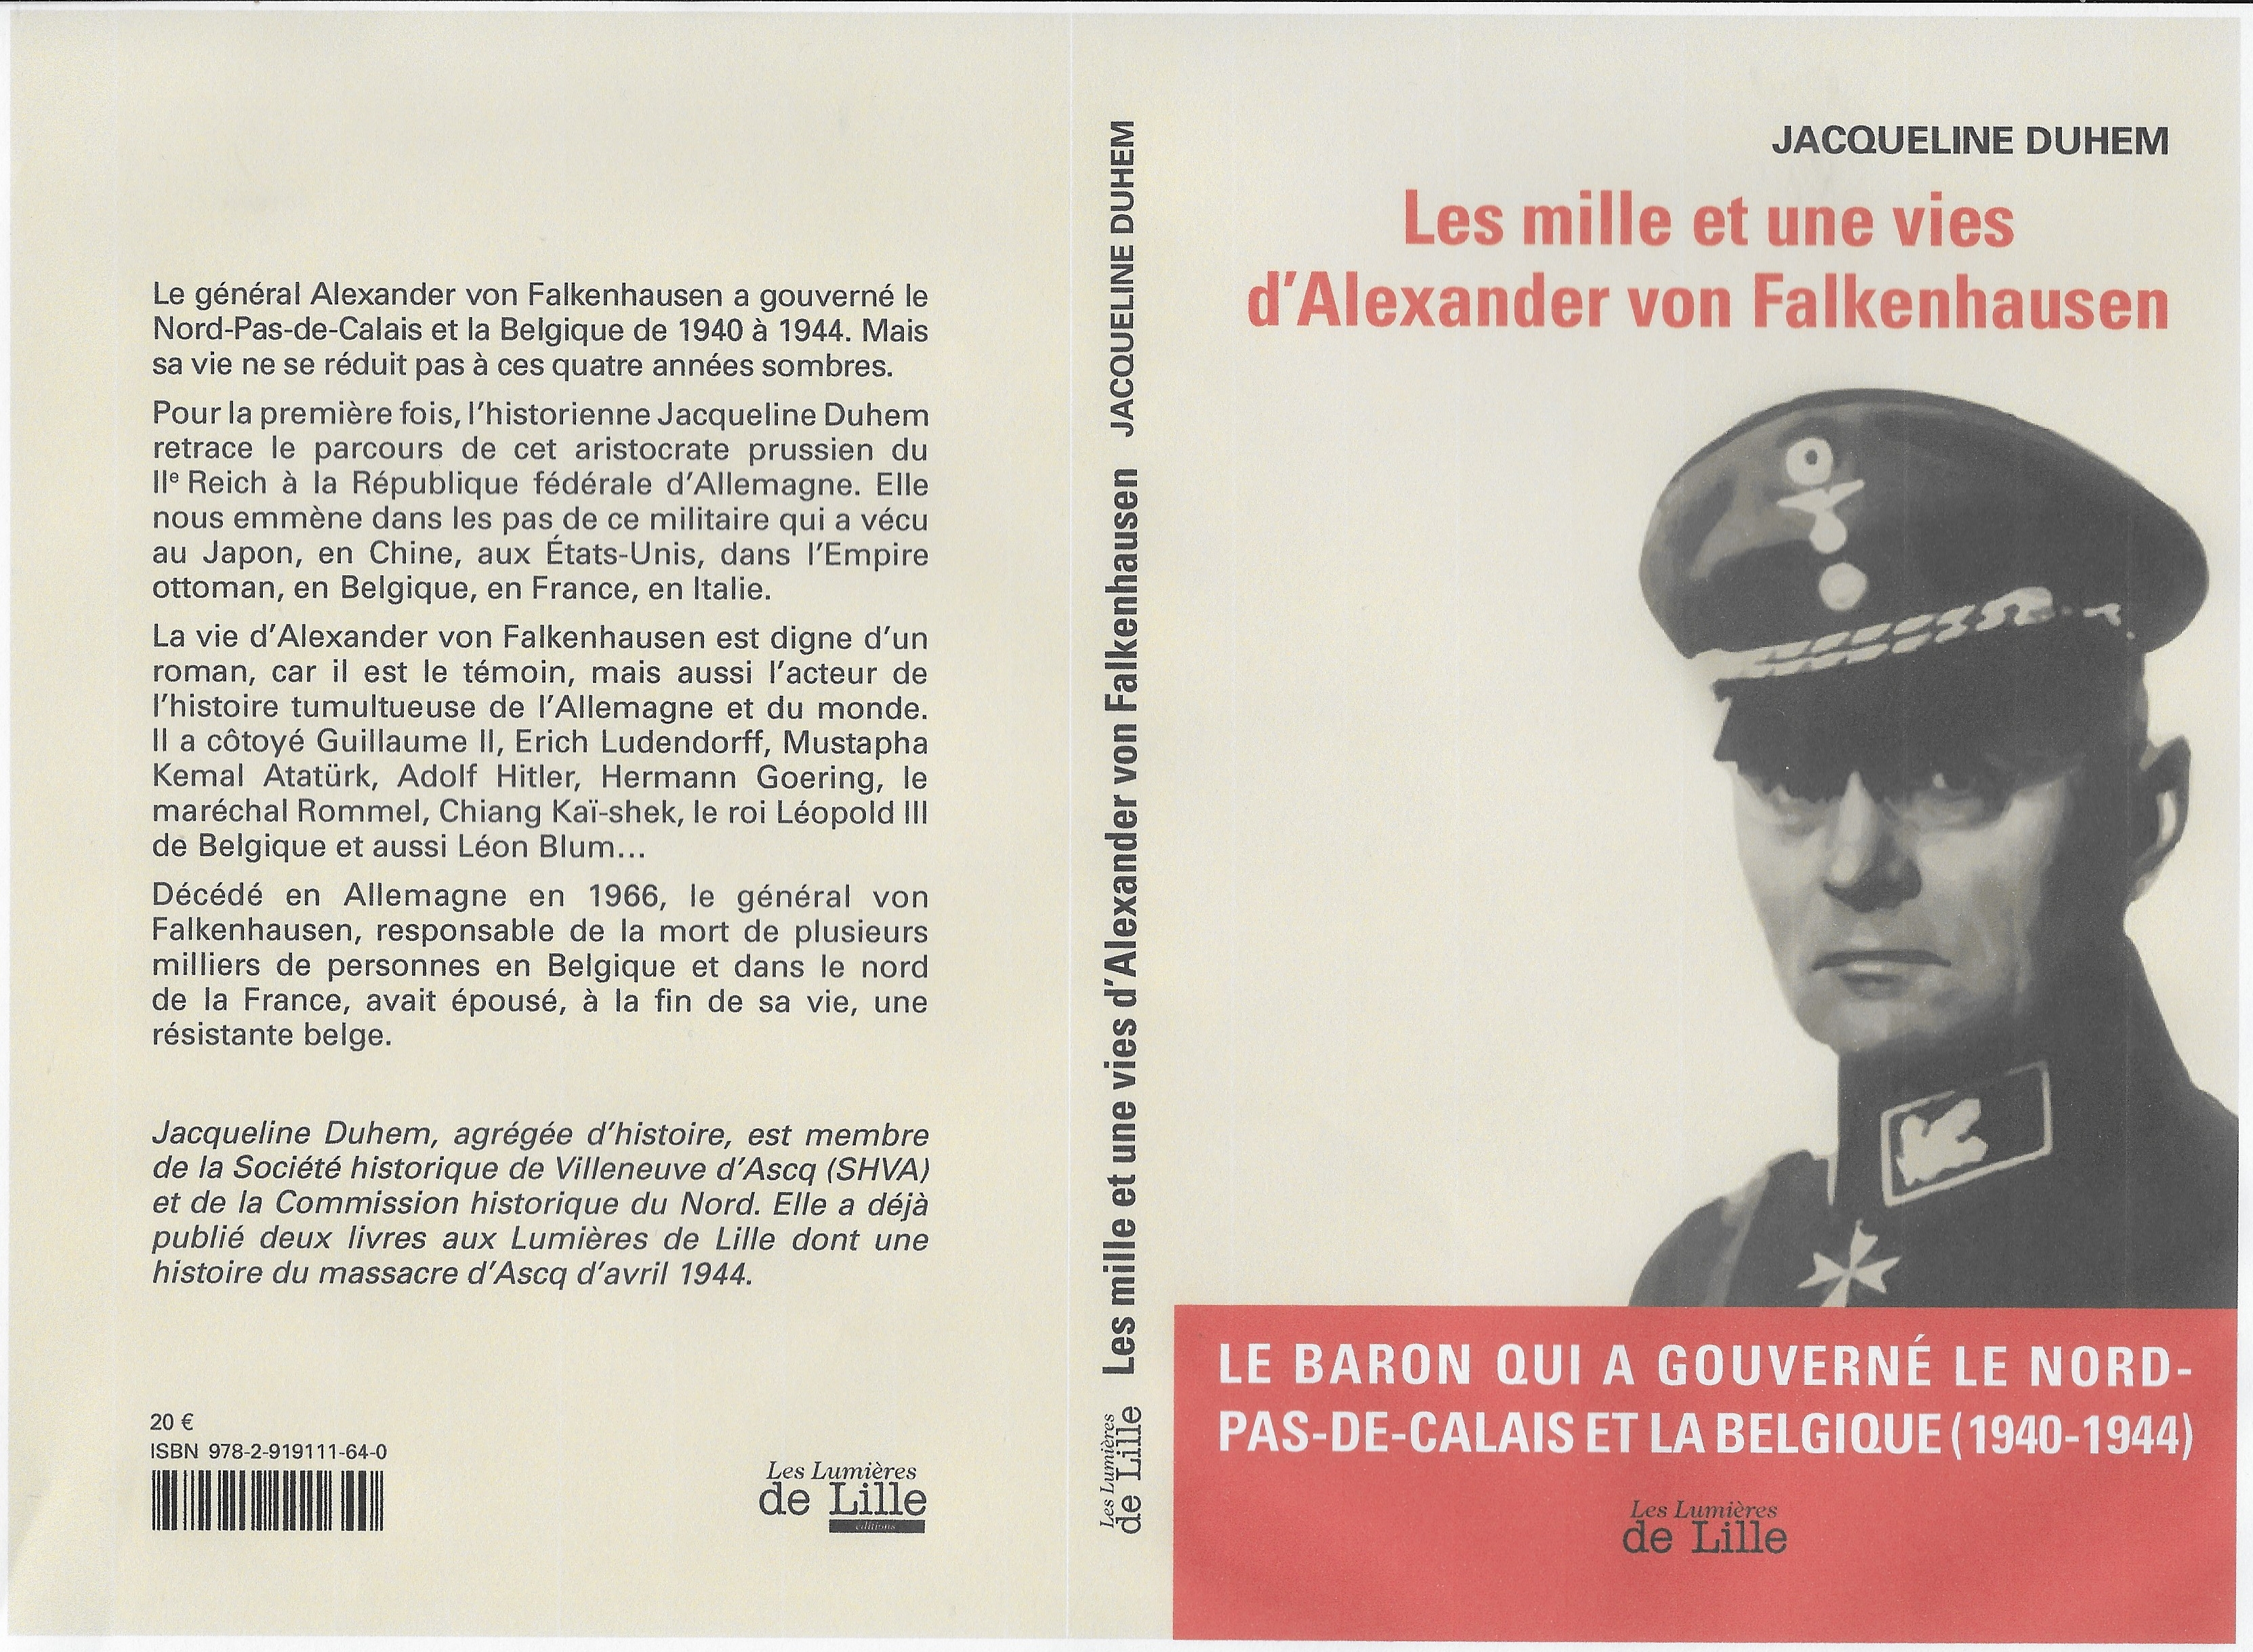 Les mille et une vies d'Alexander von Falkenhausen (Jacqueline Duhem)